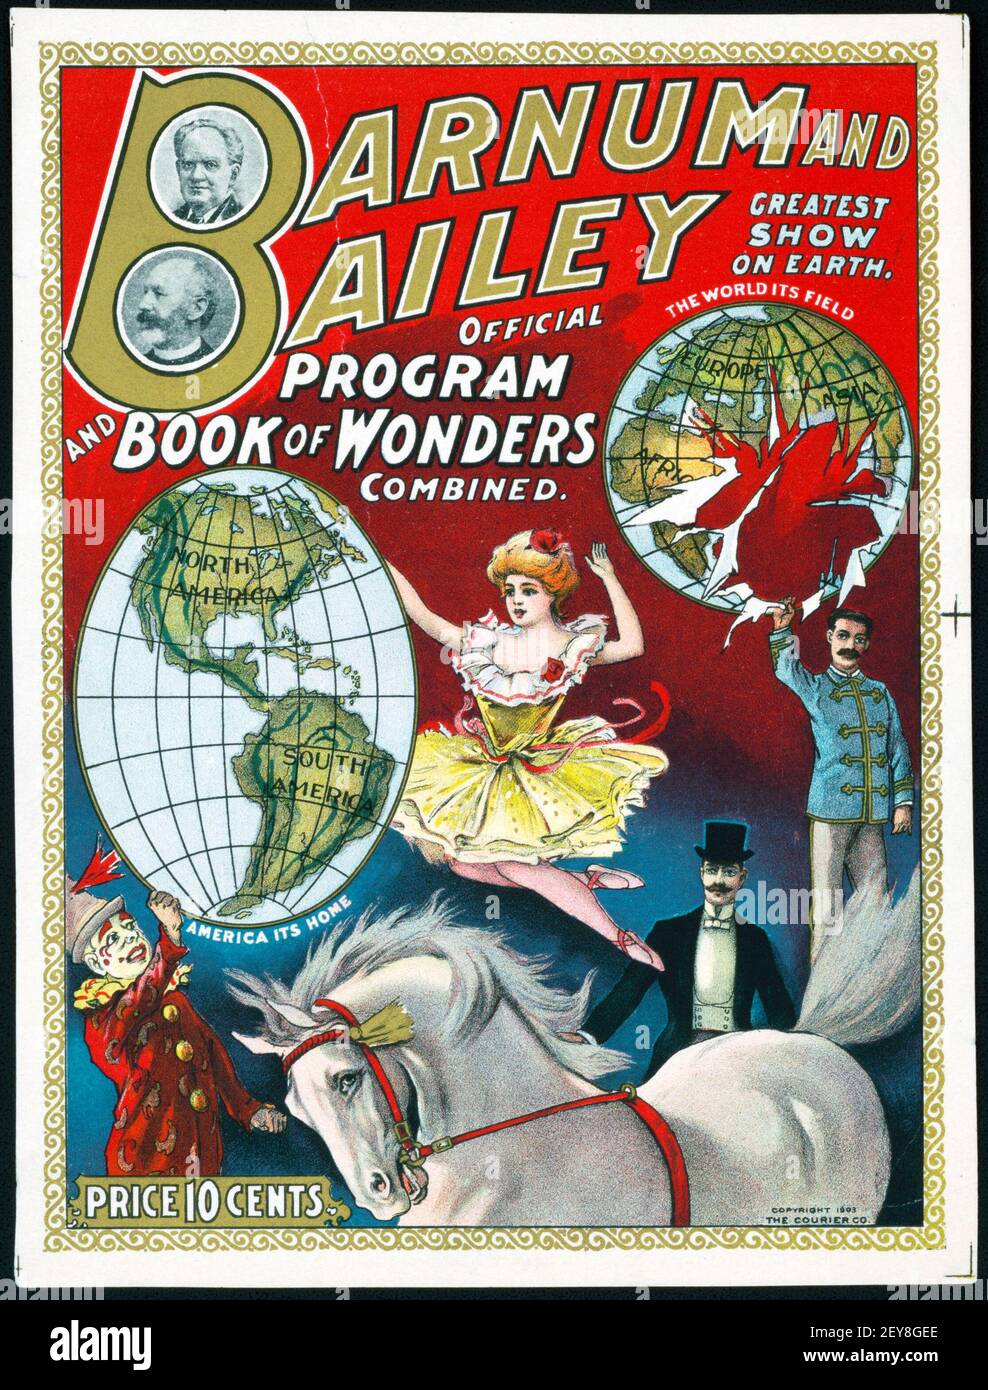 El mayor espectáculo de Barnum & Bailey en la Tierra. Programa y libro de maravillas combinados. Foto de stock